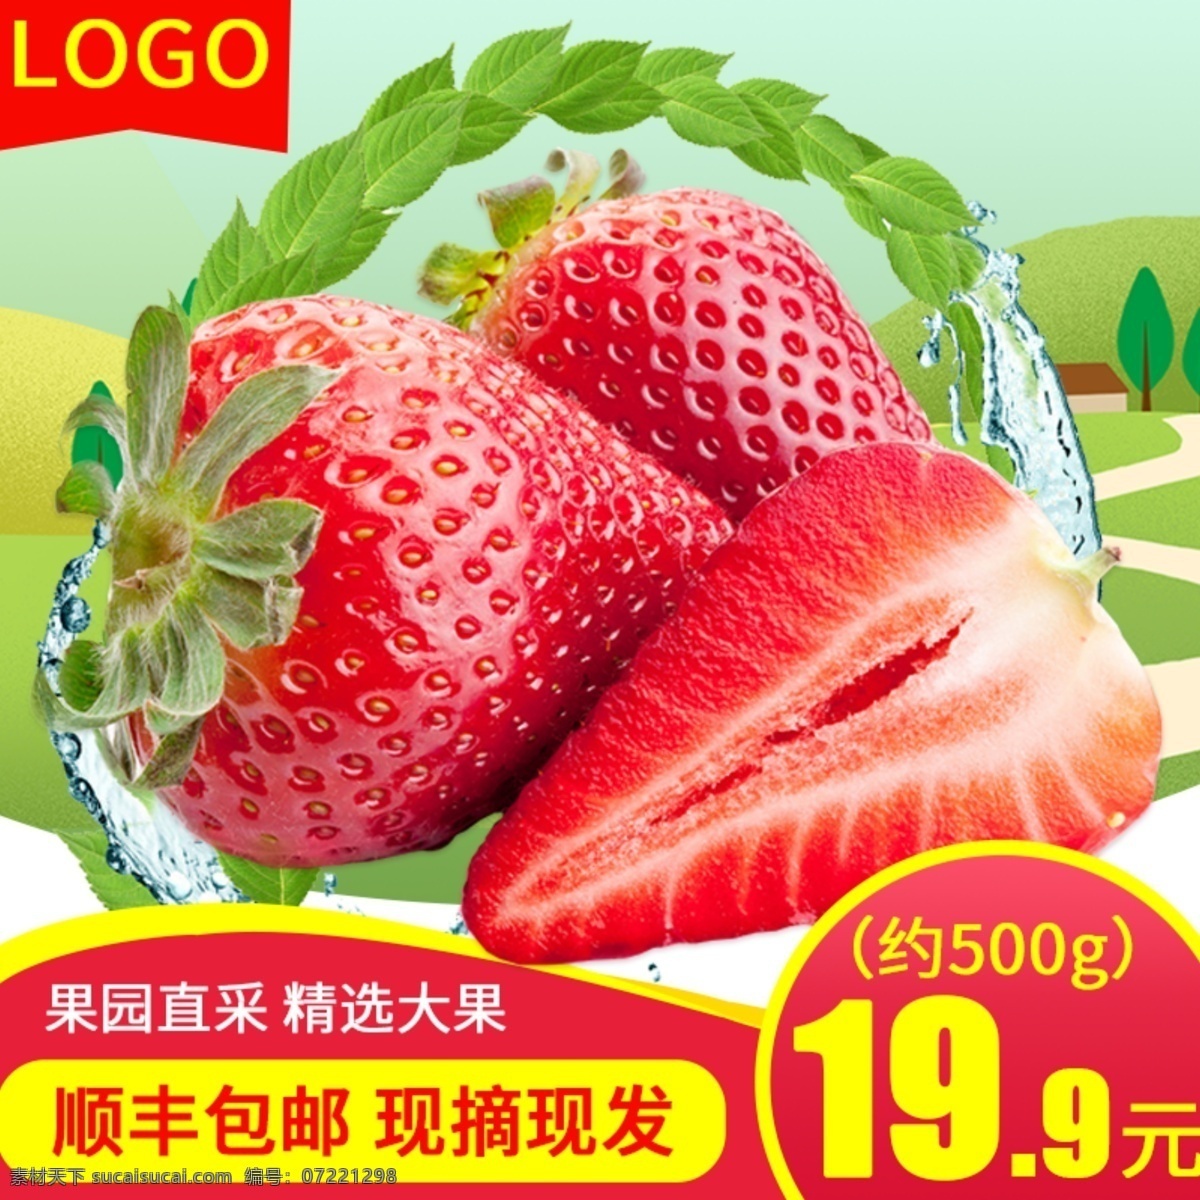 电商 淘宝 草莓 水果 生鲜 主 图 直通车 电商淘宝 水果生鲜 主图